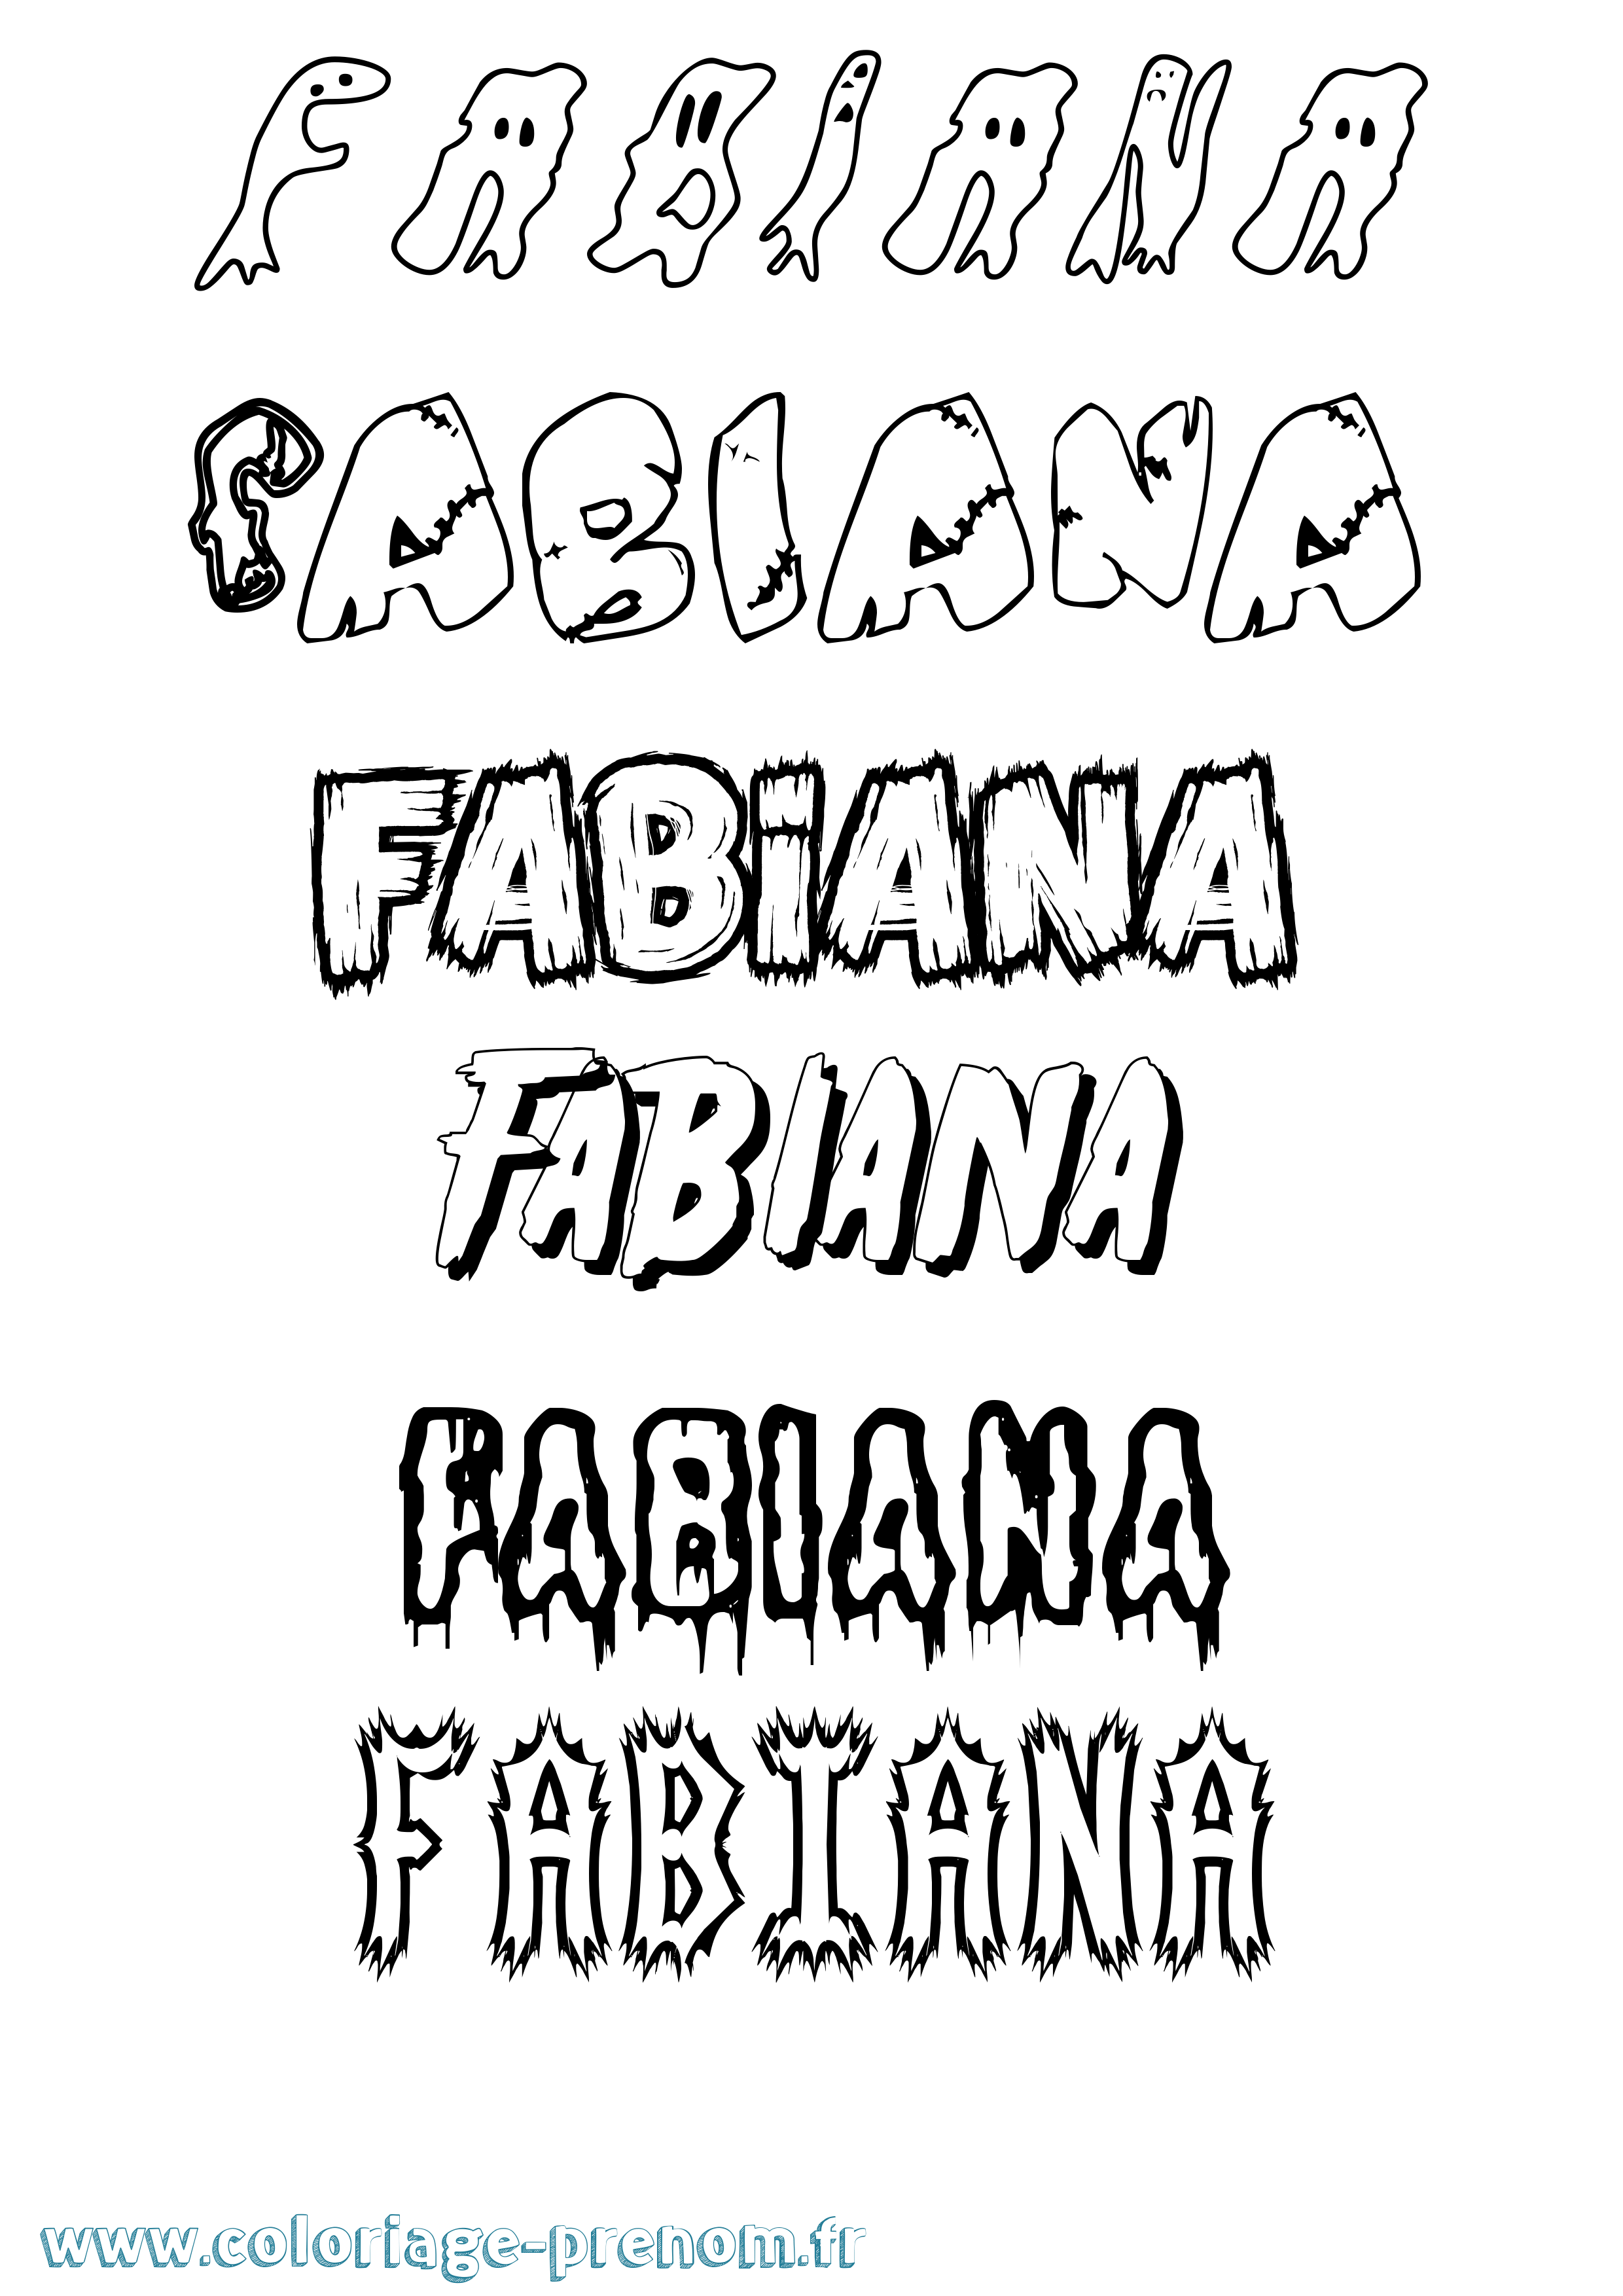 Coloriage prénom Fabiana Frisson